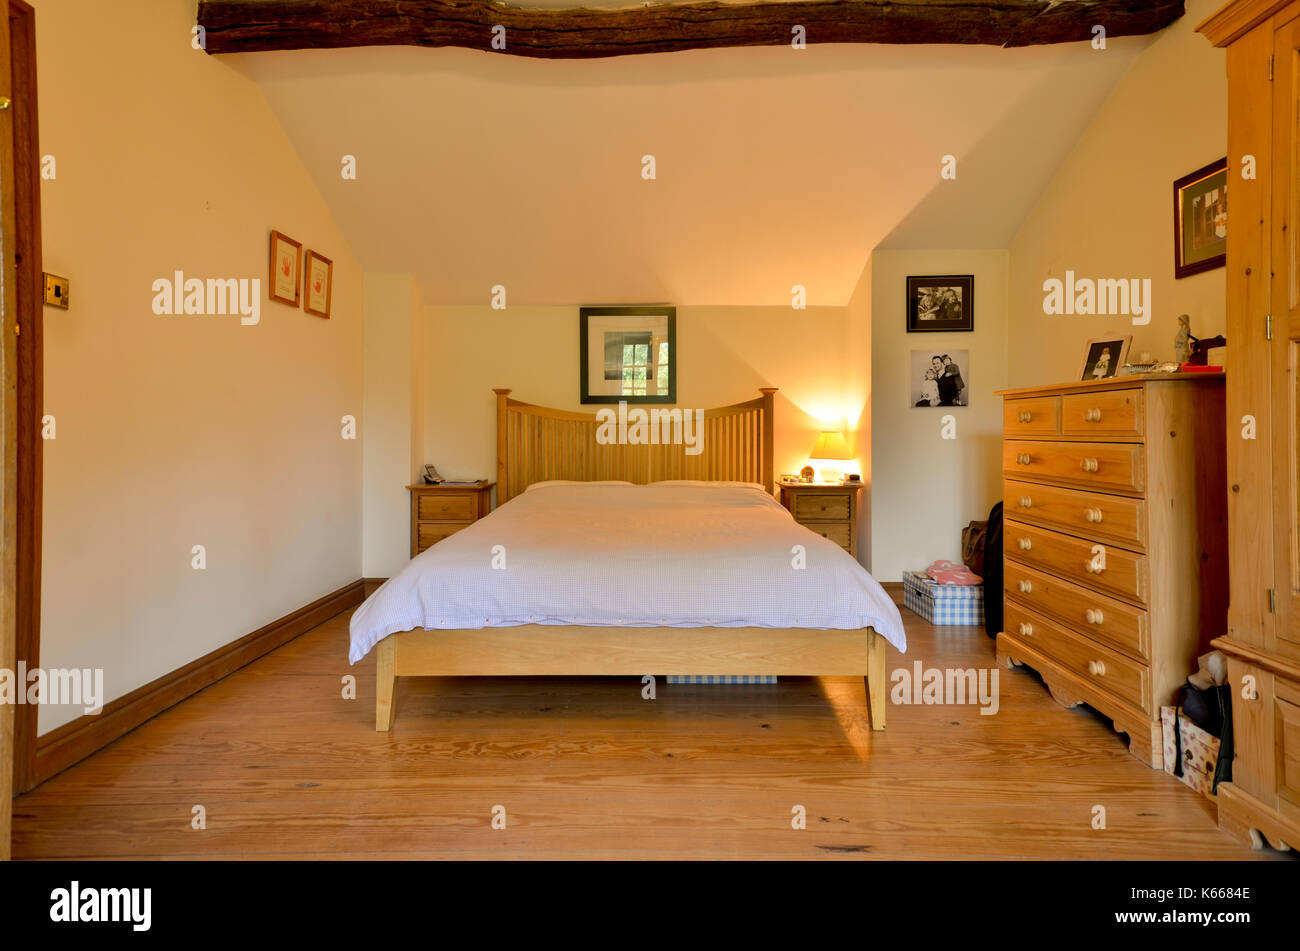 Gäste Schlafzimmer im cottage mit freiliegenden Balken Stockfoto